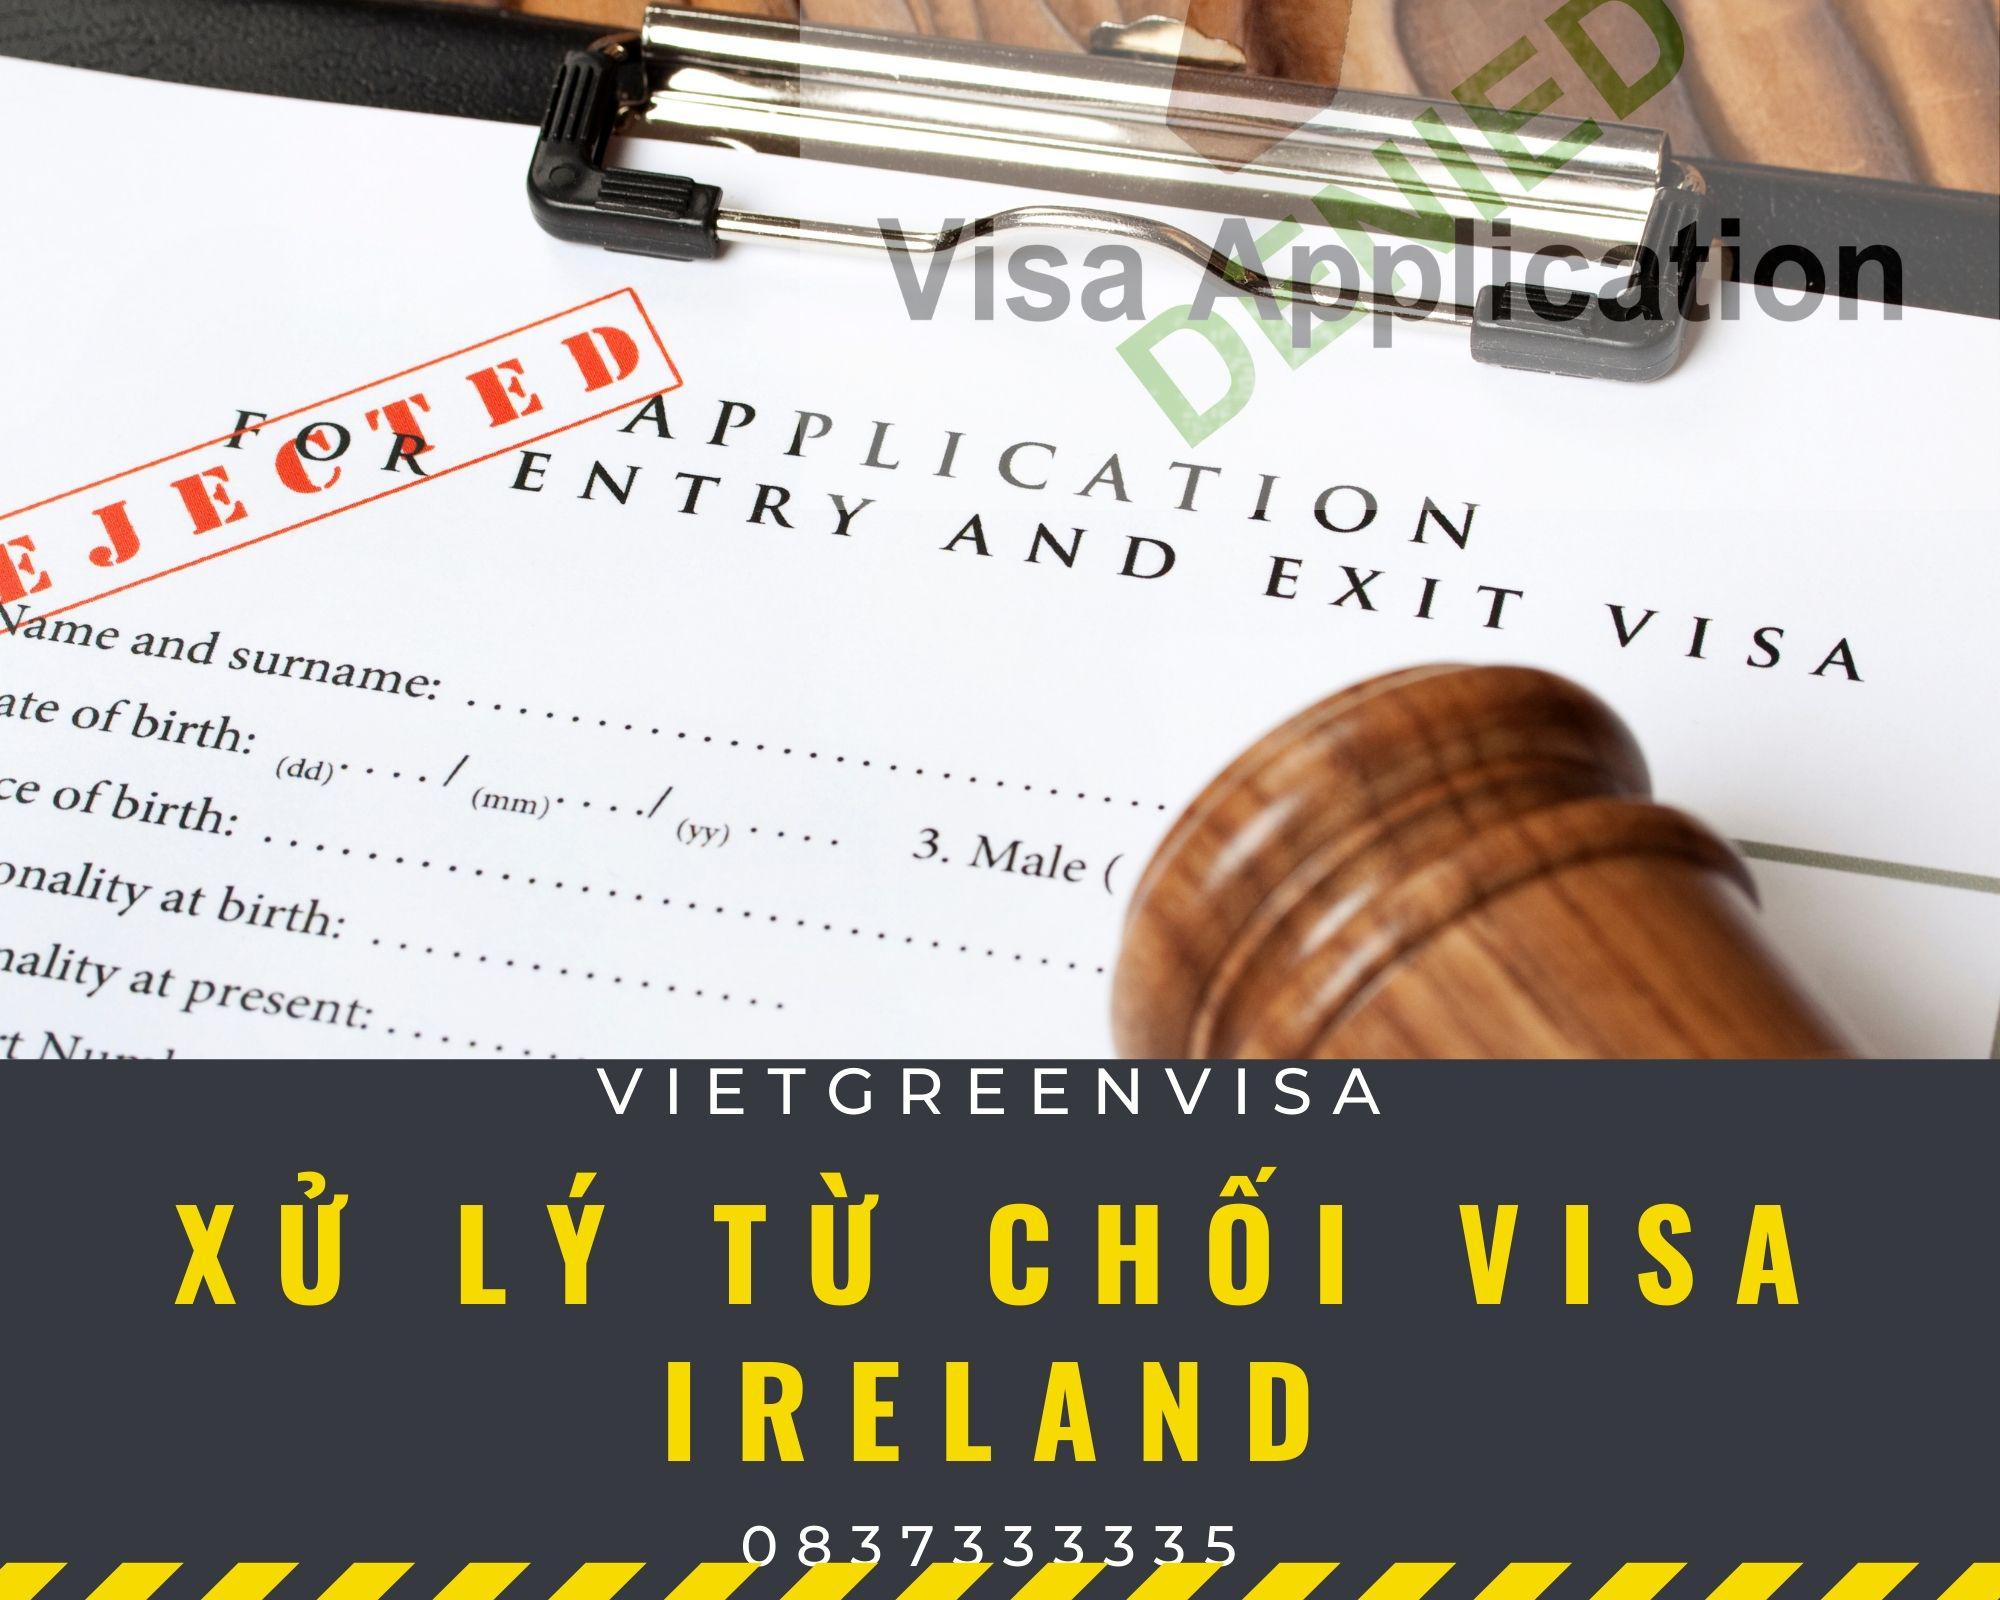 Dịch vụ xử lý visa Ireland bị từ chối nhanh gọn